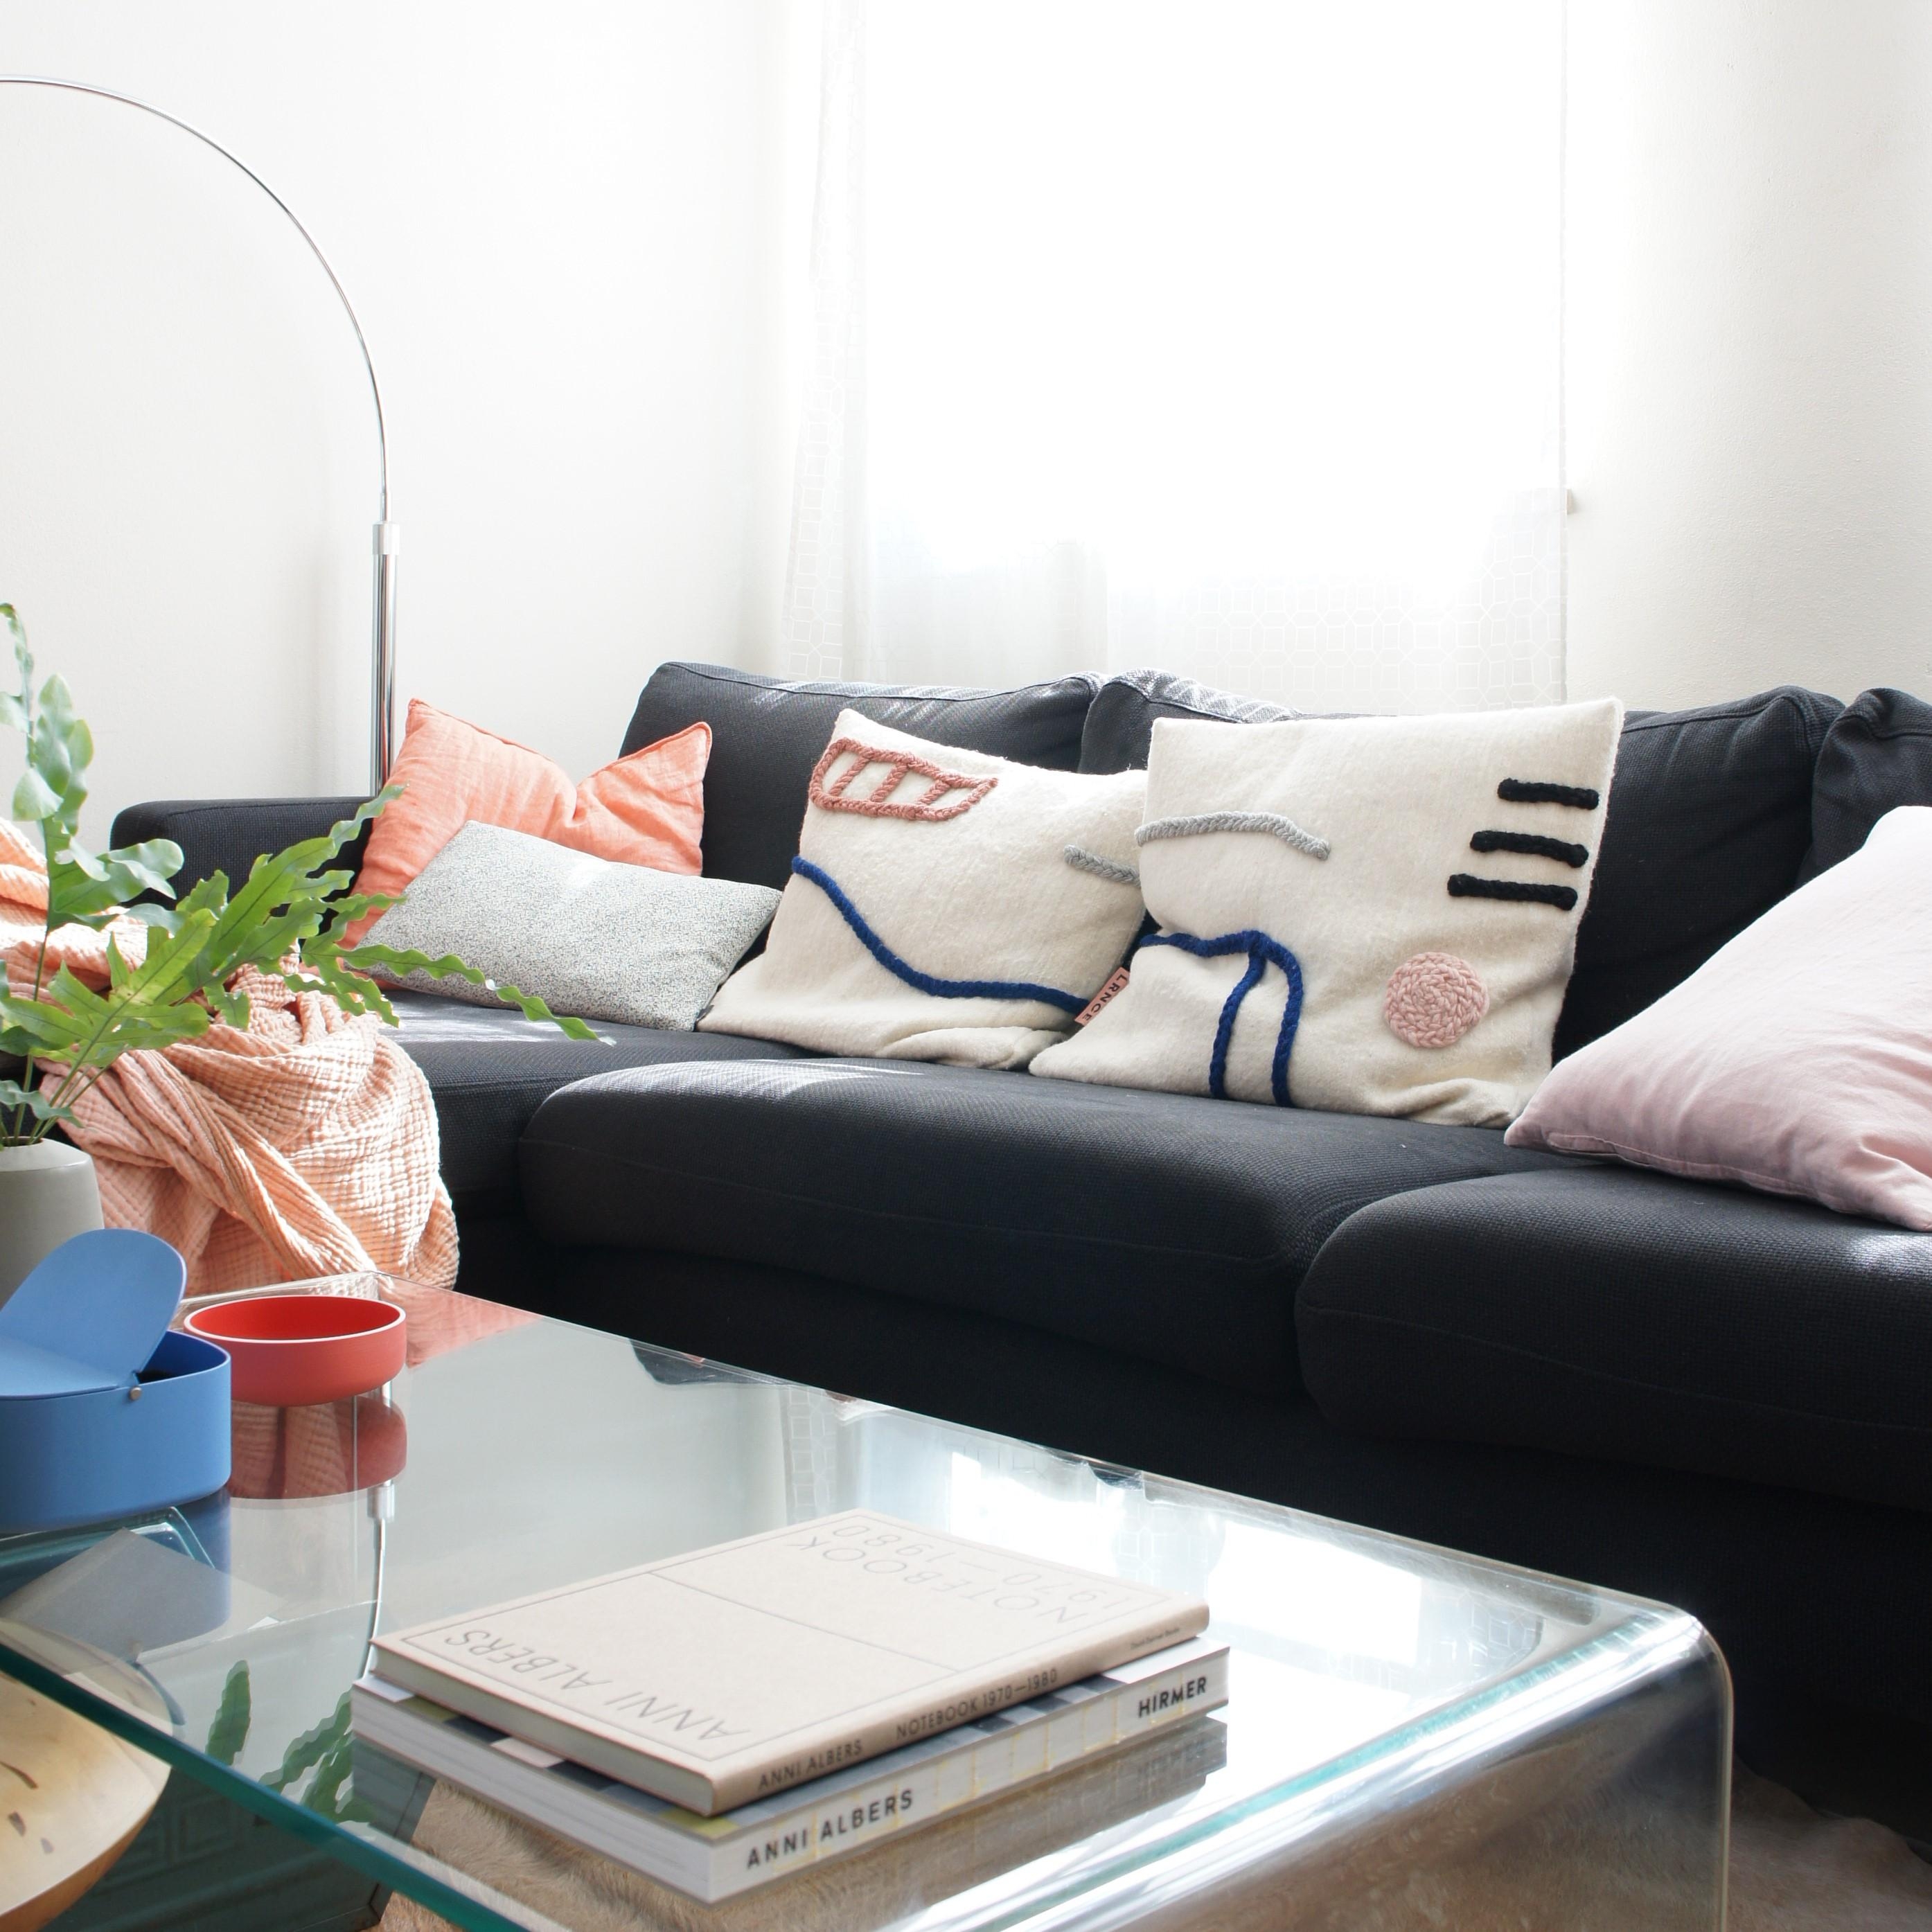 Neue Kissen.
#wohnzimmer #couch #sofa #sofakissen #kissen #textilien #handmade    